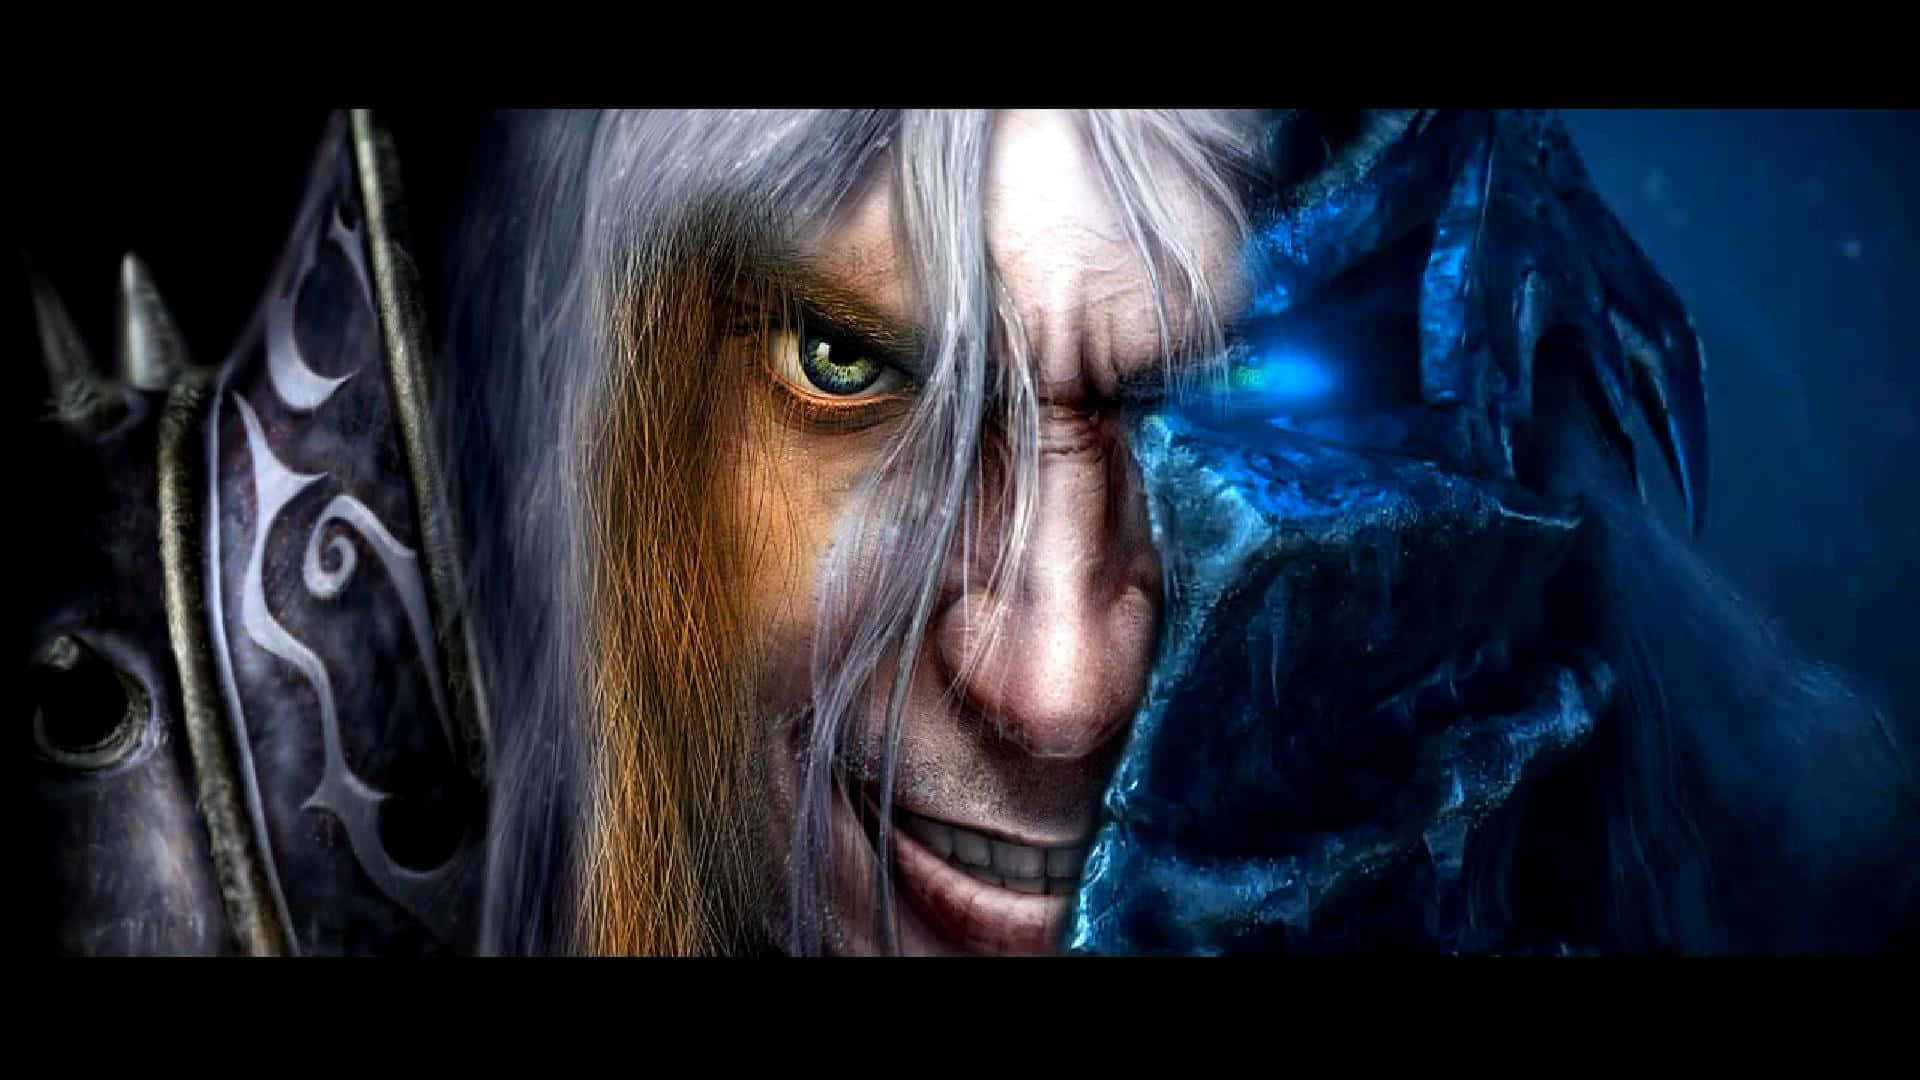 Epic World of Warcraft Battle Scene